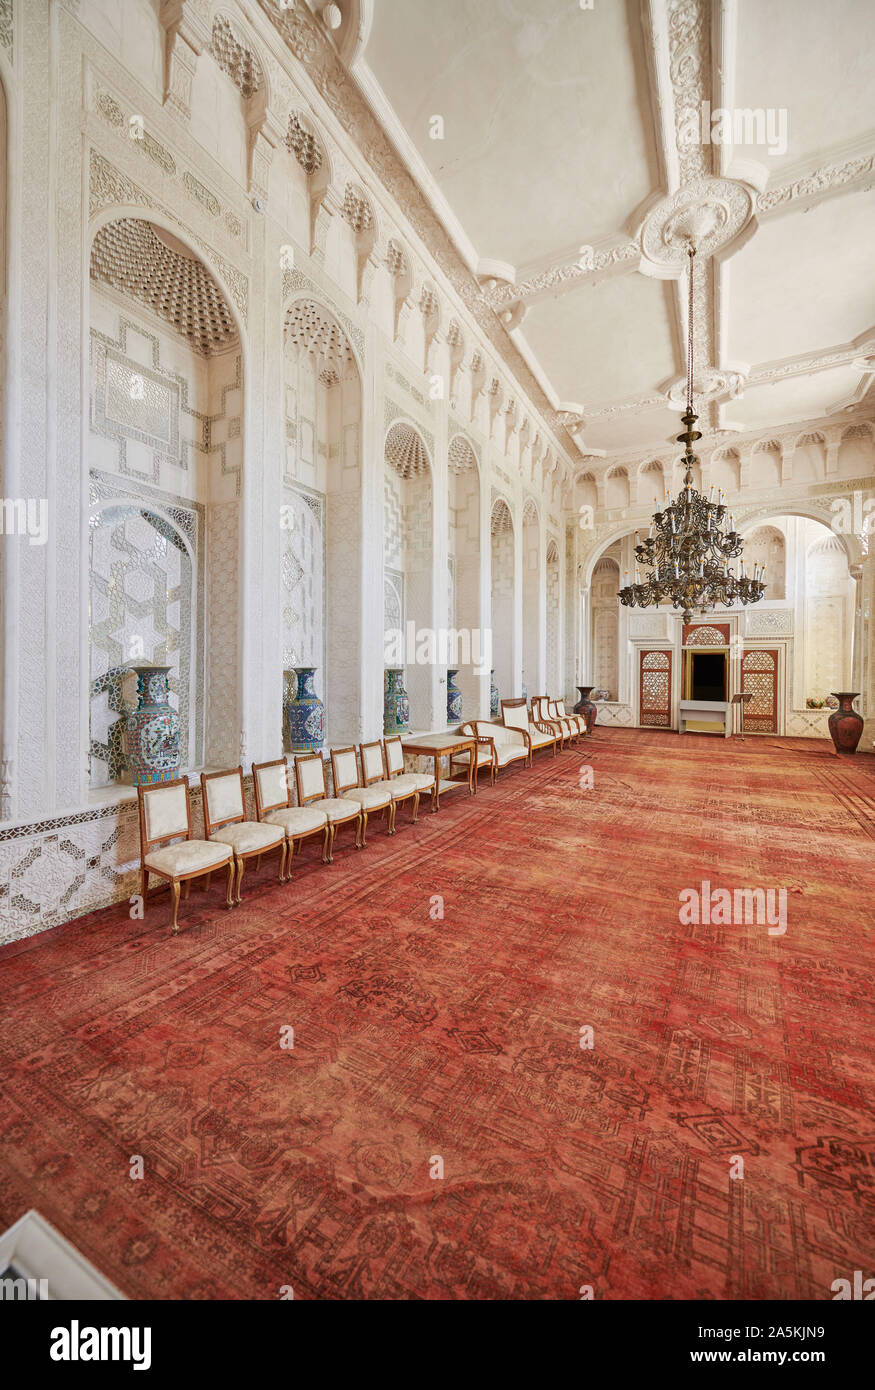 Salón Blanco, magnífica decoración interior de verano palacio residencial, Sitorai Mohi Hossa o Sitorai Mohi Khosa de último Emir de Bukhara, Uzbekistán Foto de stock